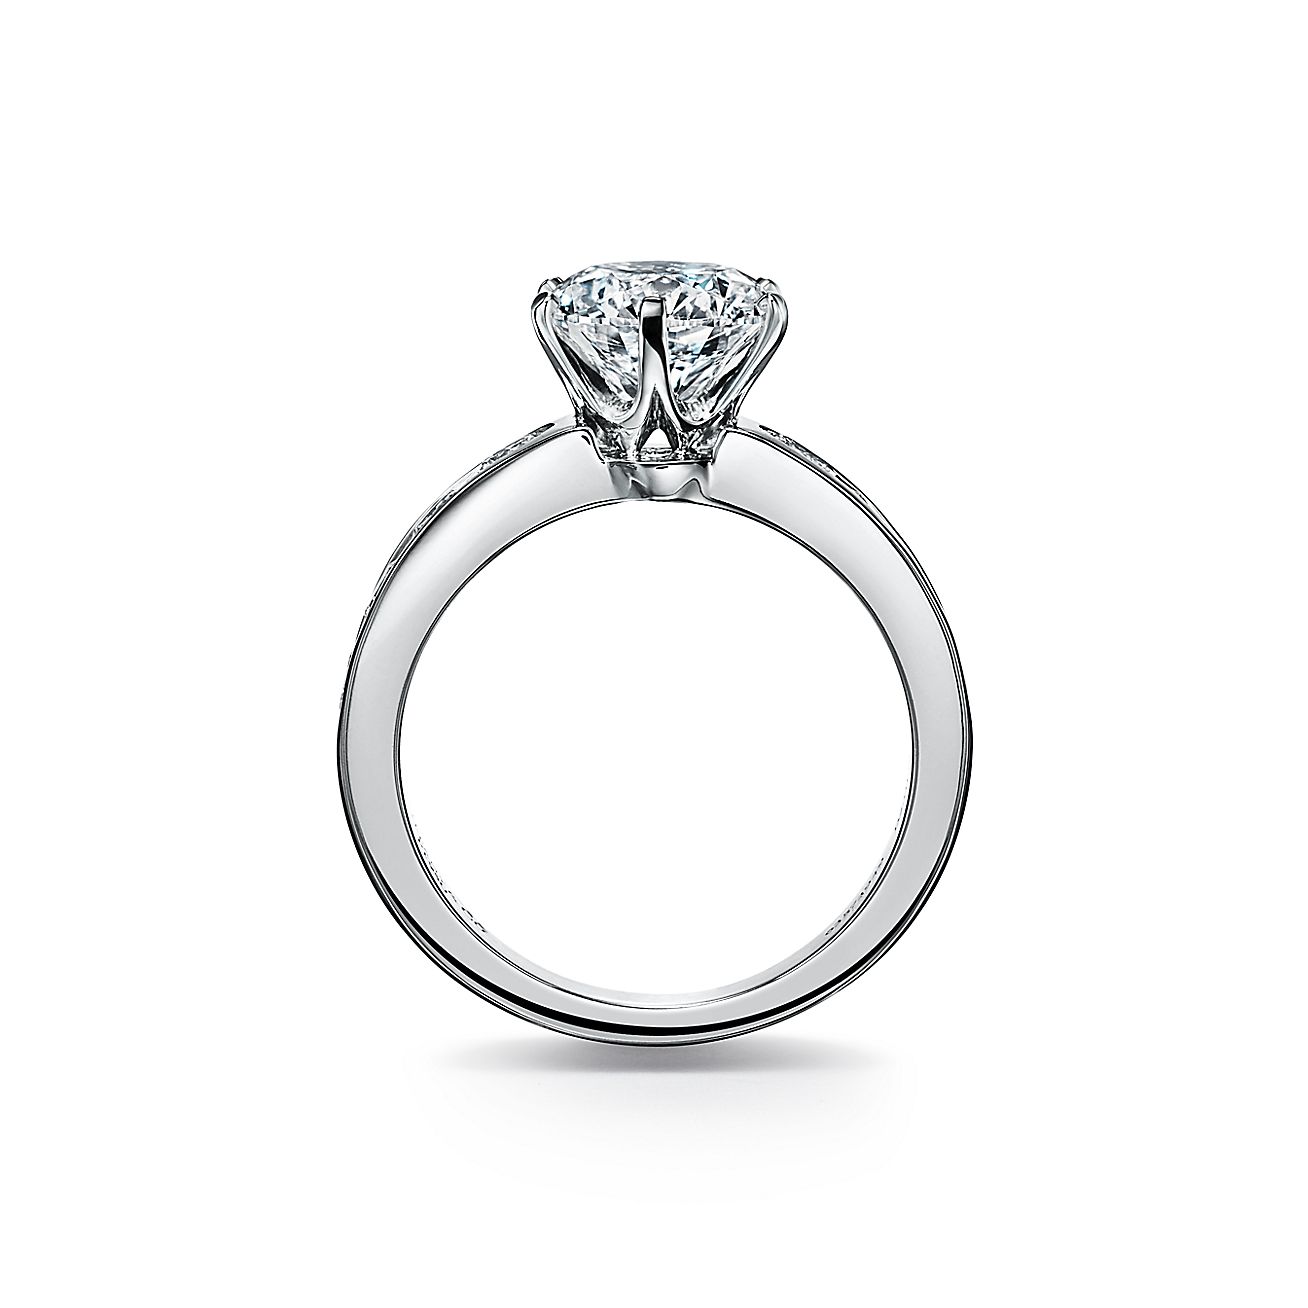 El anillo de compromiso Setting alianza en platino con diamantes engarzados en canal